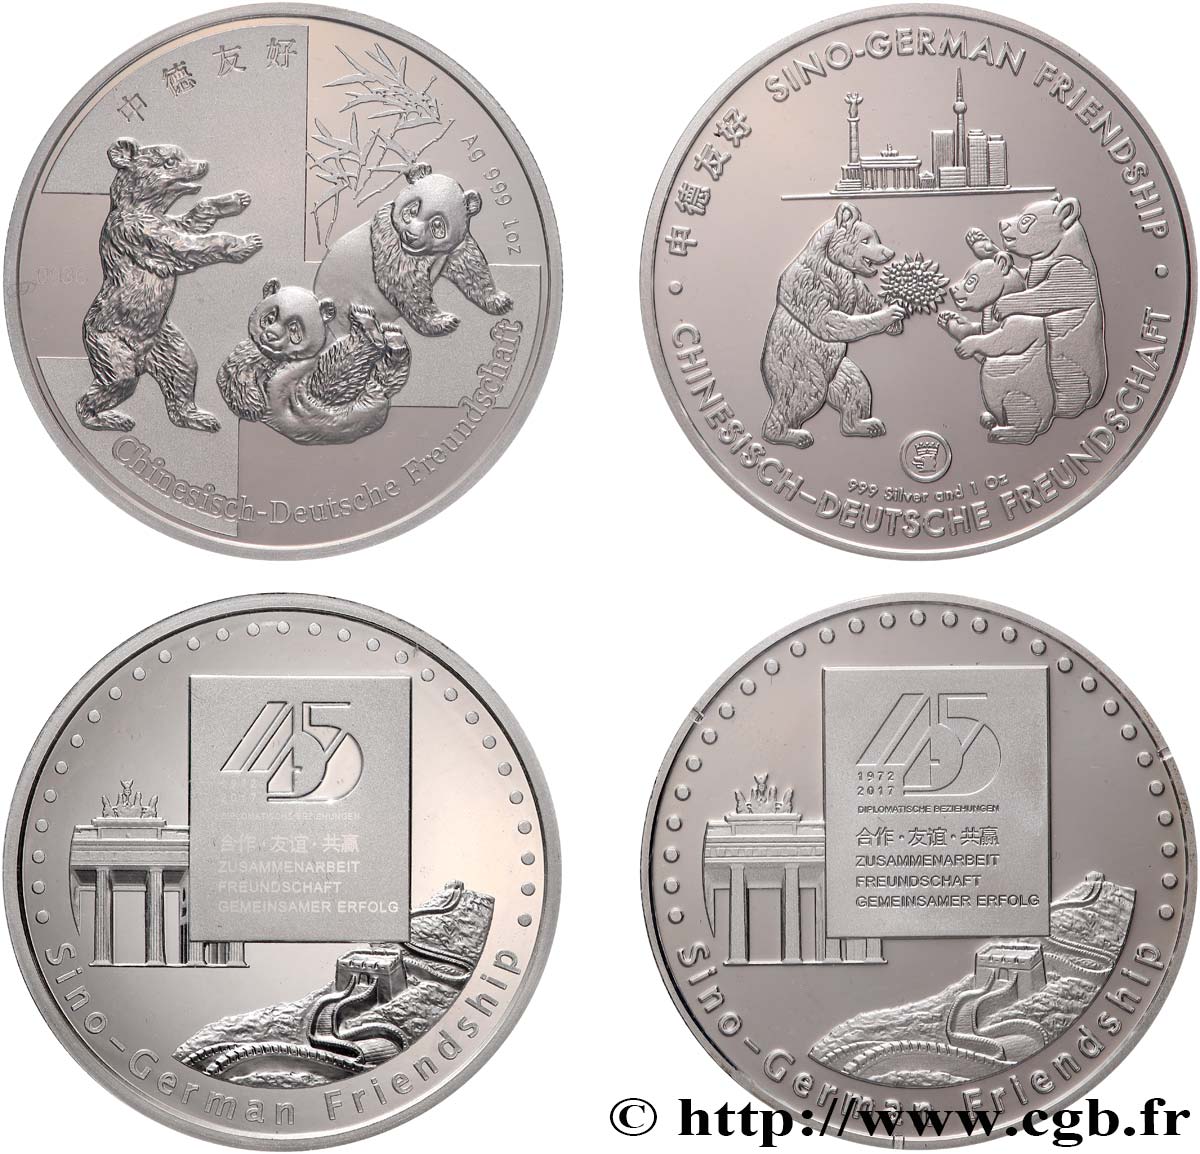 GERMANY Médailles commémoratives, 45e anniversaire de l’amitié sino-allemande MS